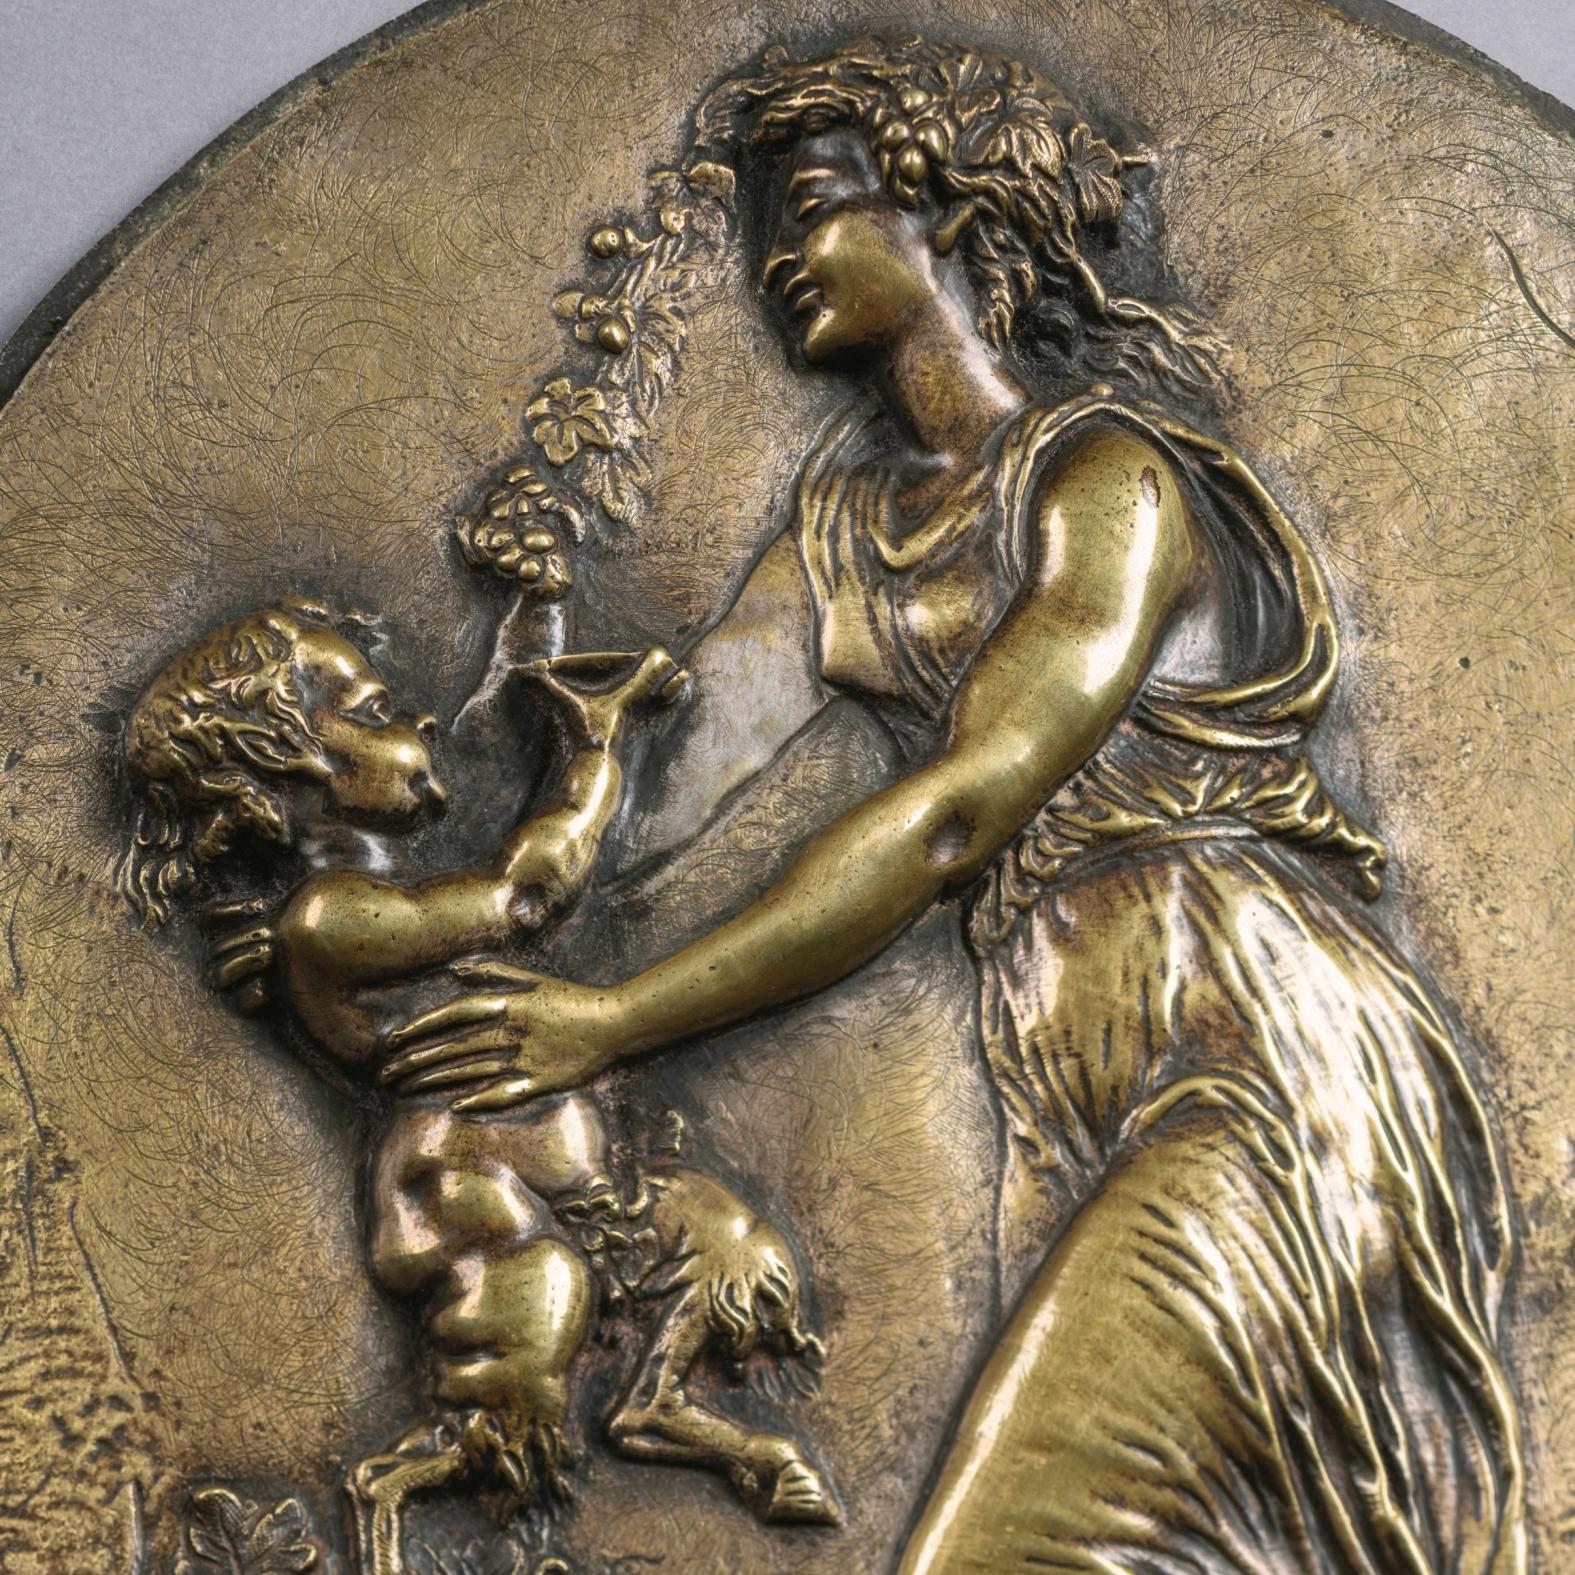 Ein Paar ovale Bronzereliefs nach Clodion.

Jeweils beschriftet mit dem Guss Clodion.

Jede Tafel zeigt eine bacchantische Szene, in der eine Jungfrau mit einem jungen Satyr tanzt.

Französisch, CIRCA 1870. 